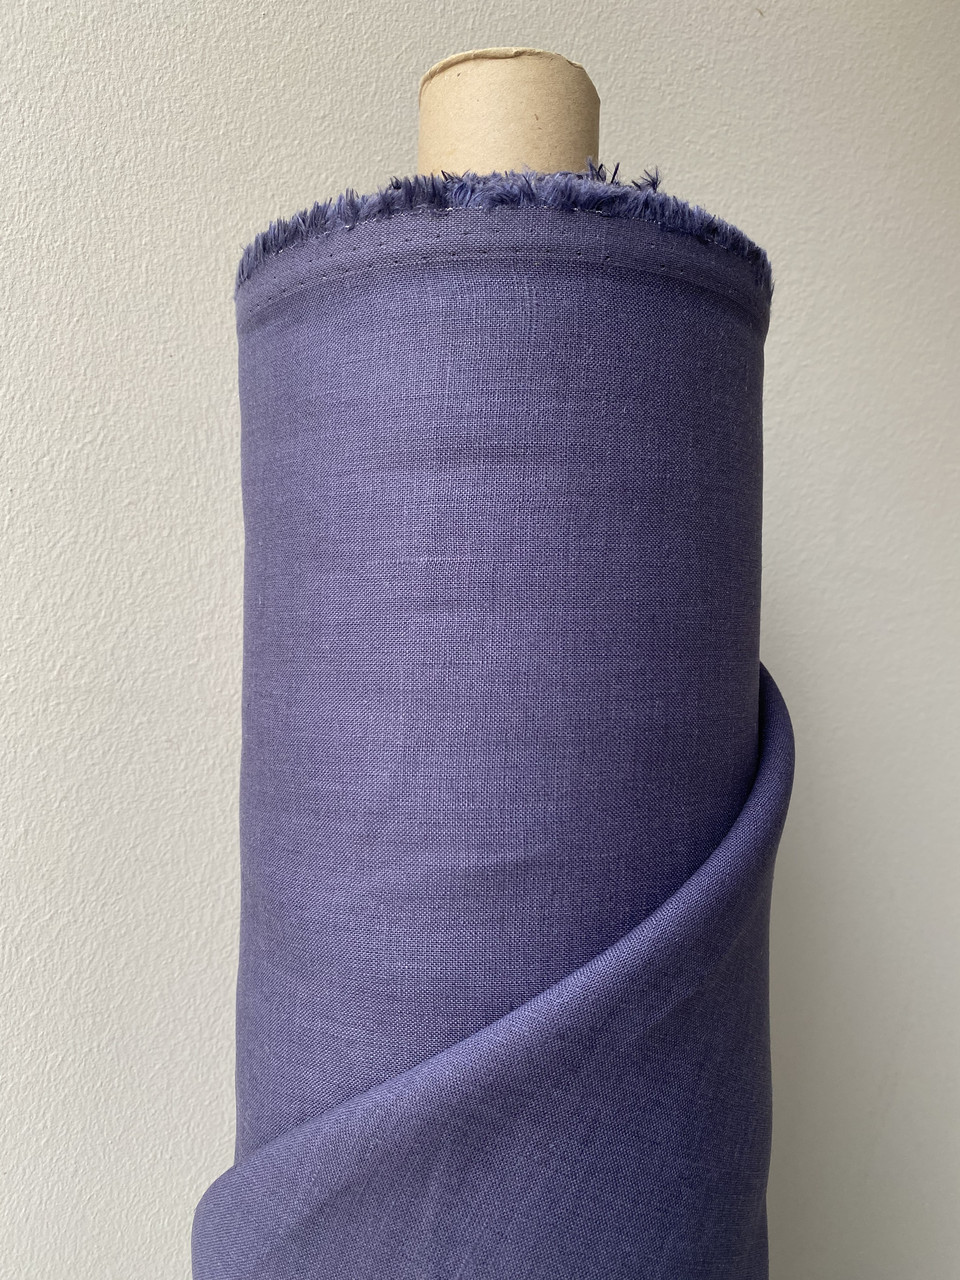 Фіолетова сорочково-платтєва лляна тканина, колір 915/543